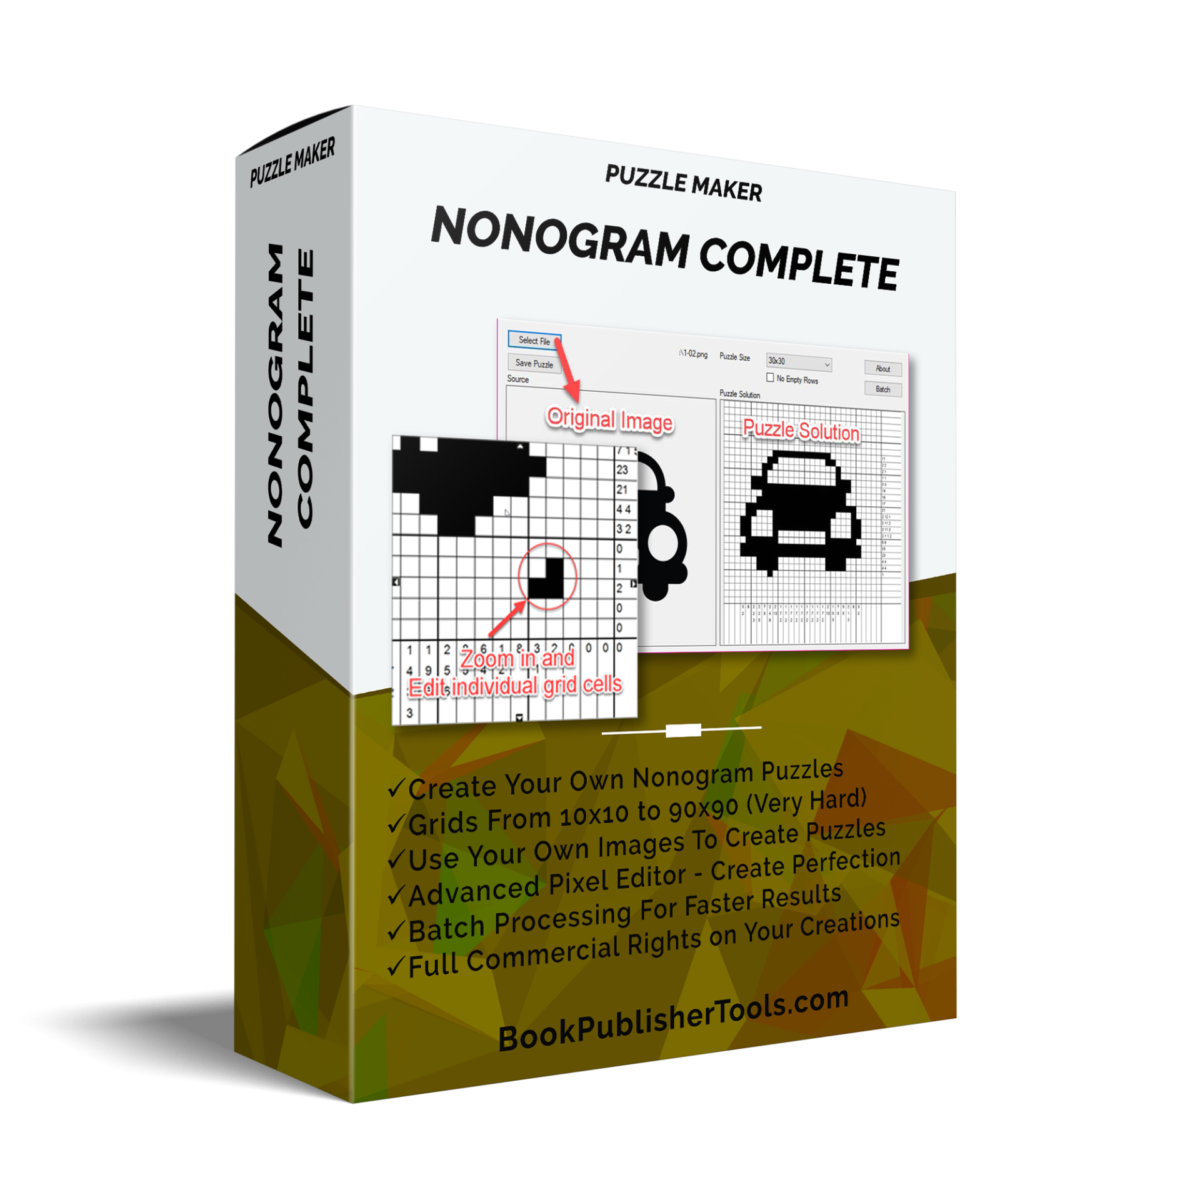 Puzzle Maker Nonogram Complete software box